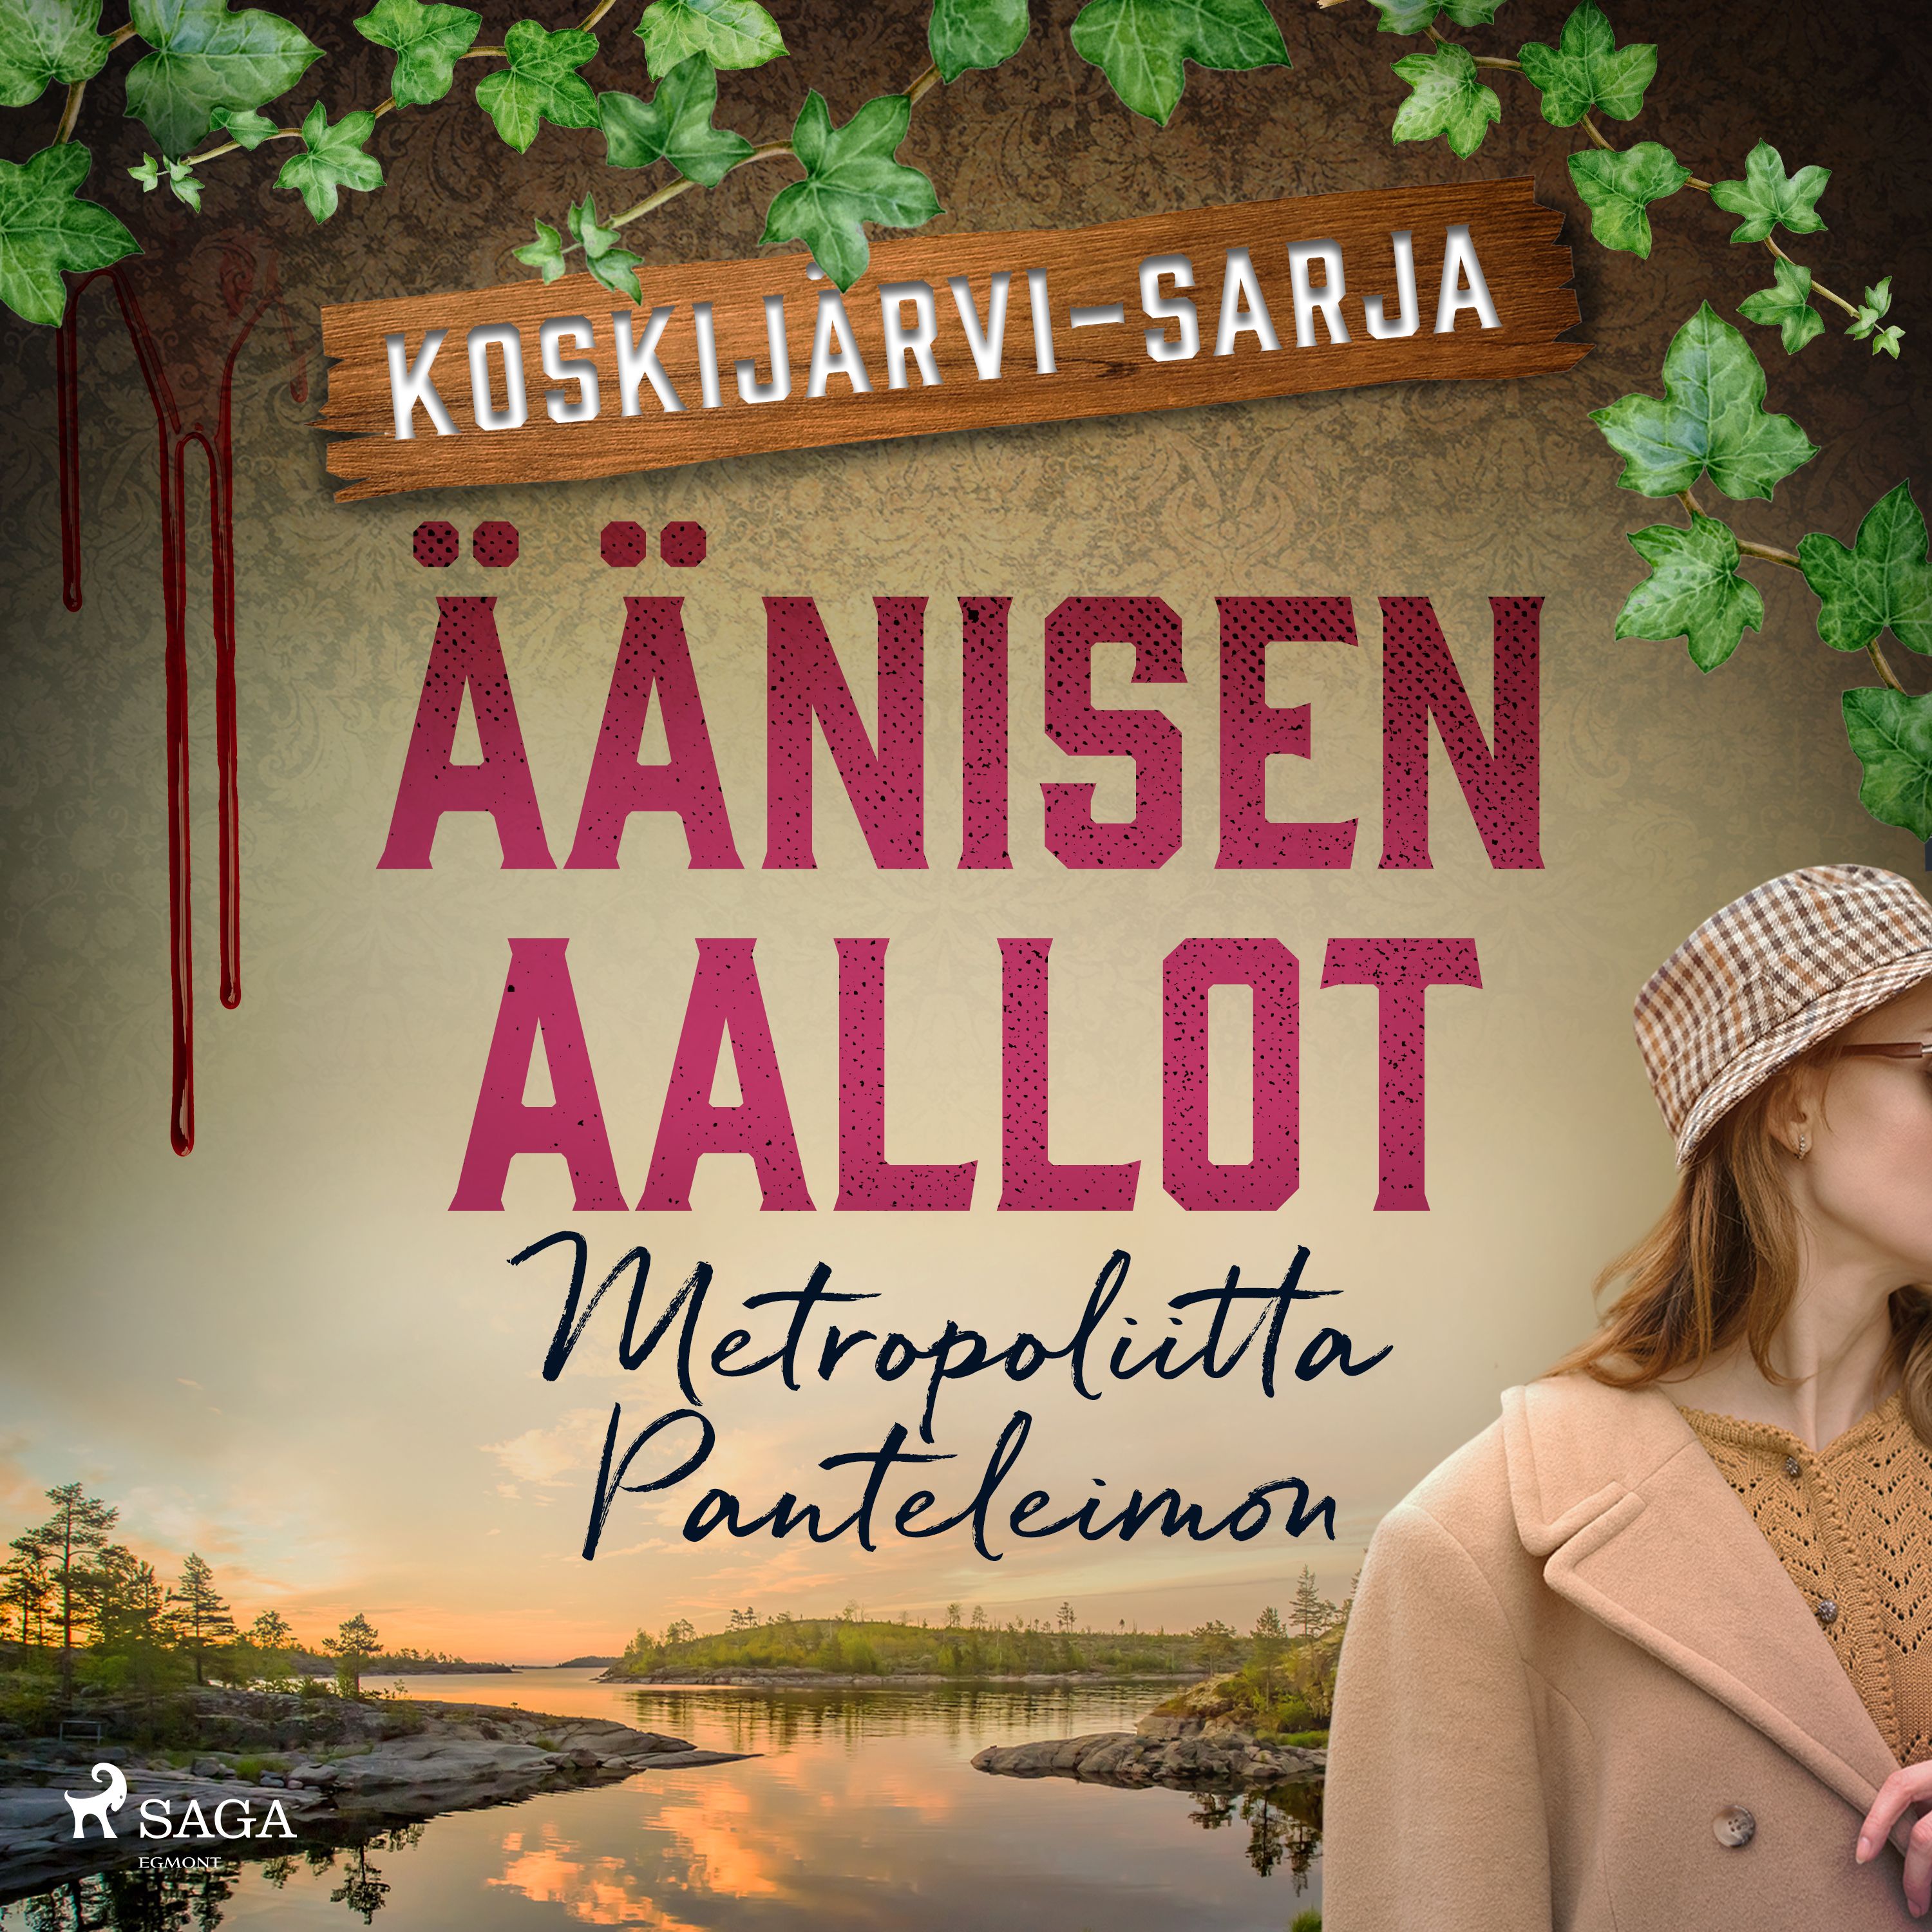 Äänisen aallot, audiobook by Metropoliitta Panteleimon